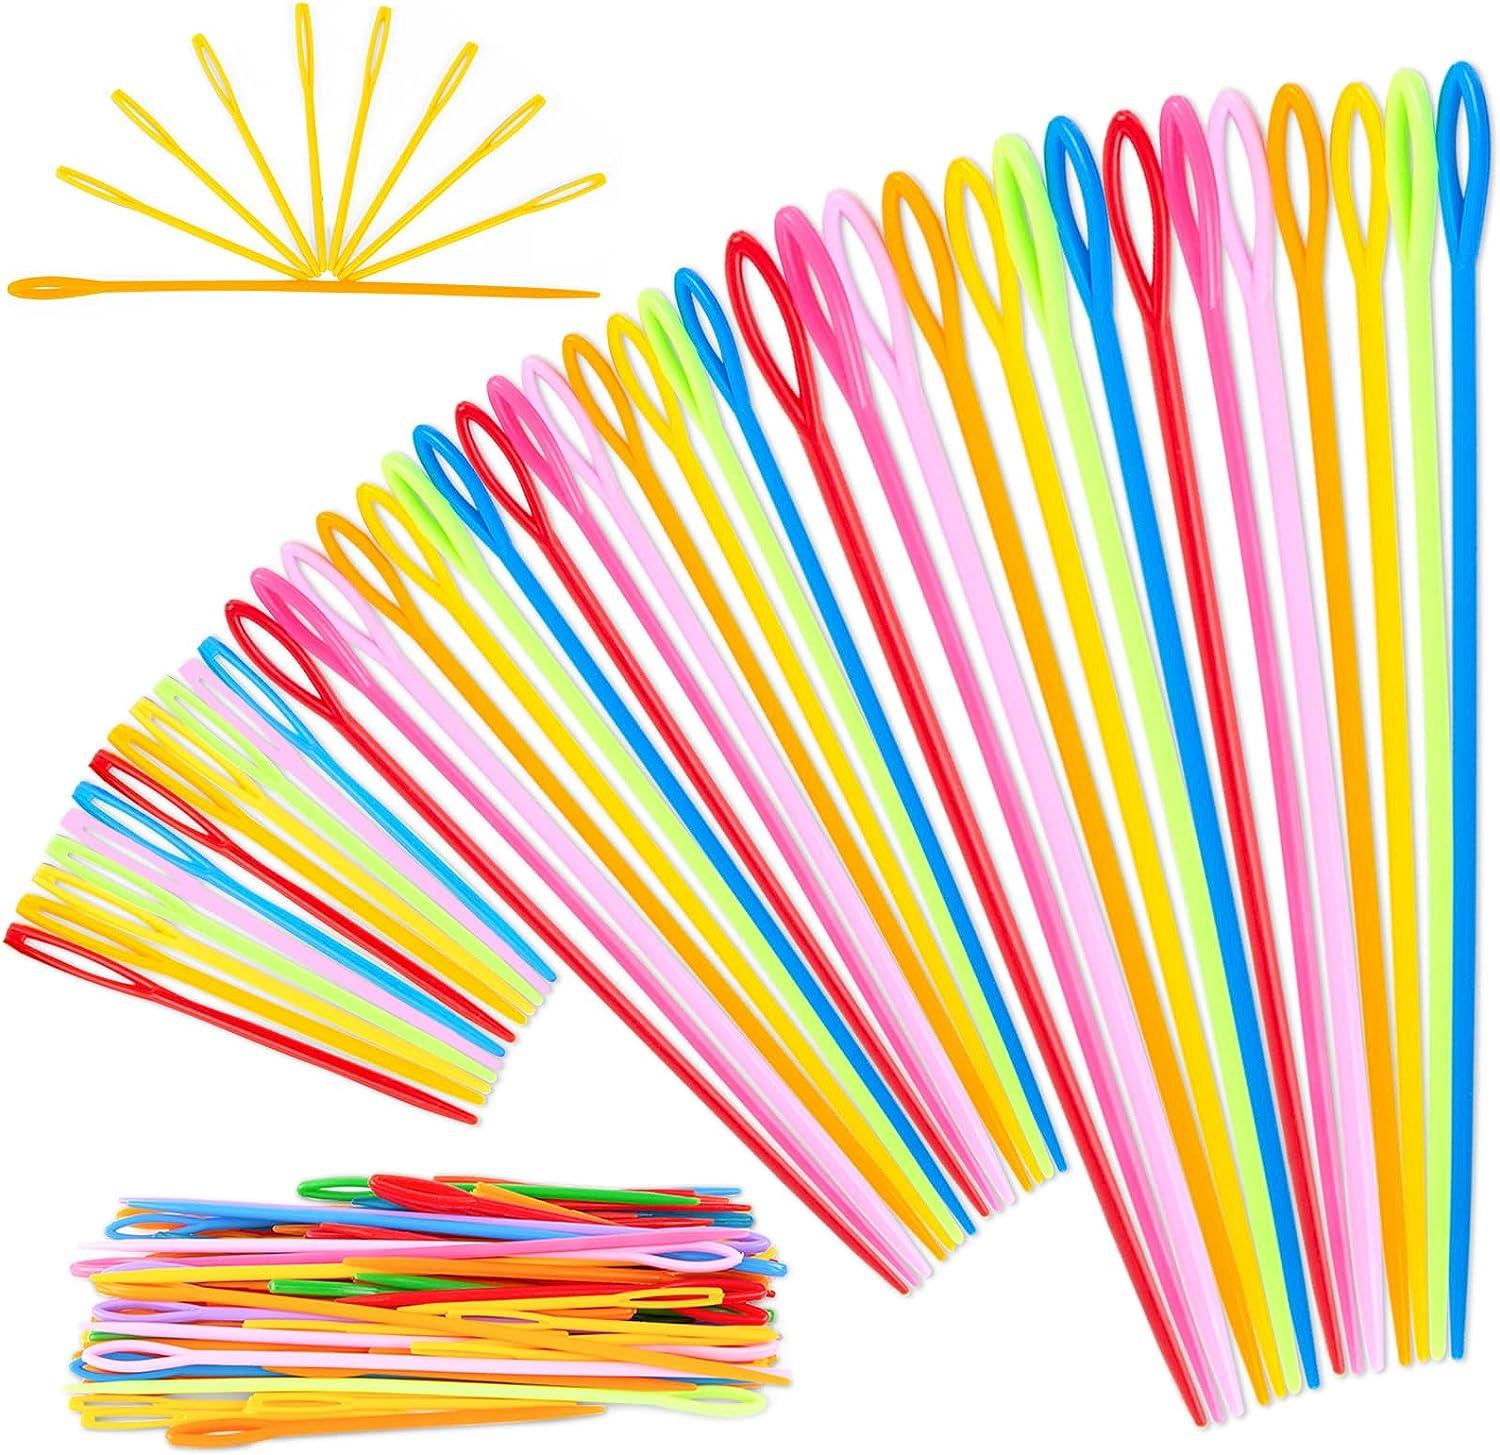 100pcs Plastic Needles Plastic Sewing Needles Plastic Yarn Needles Bulk Colorful Safety Large Eye Plastic Sewing Needles for Learning Kids Colorful